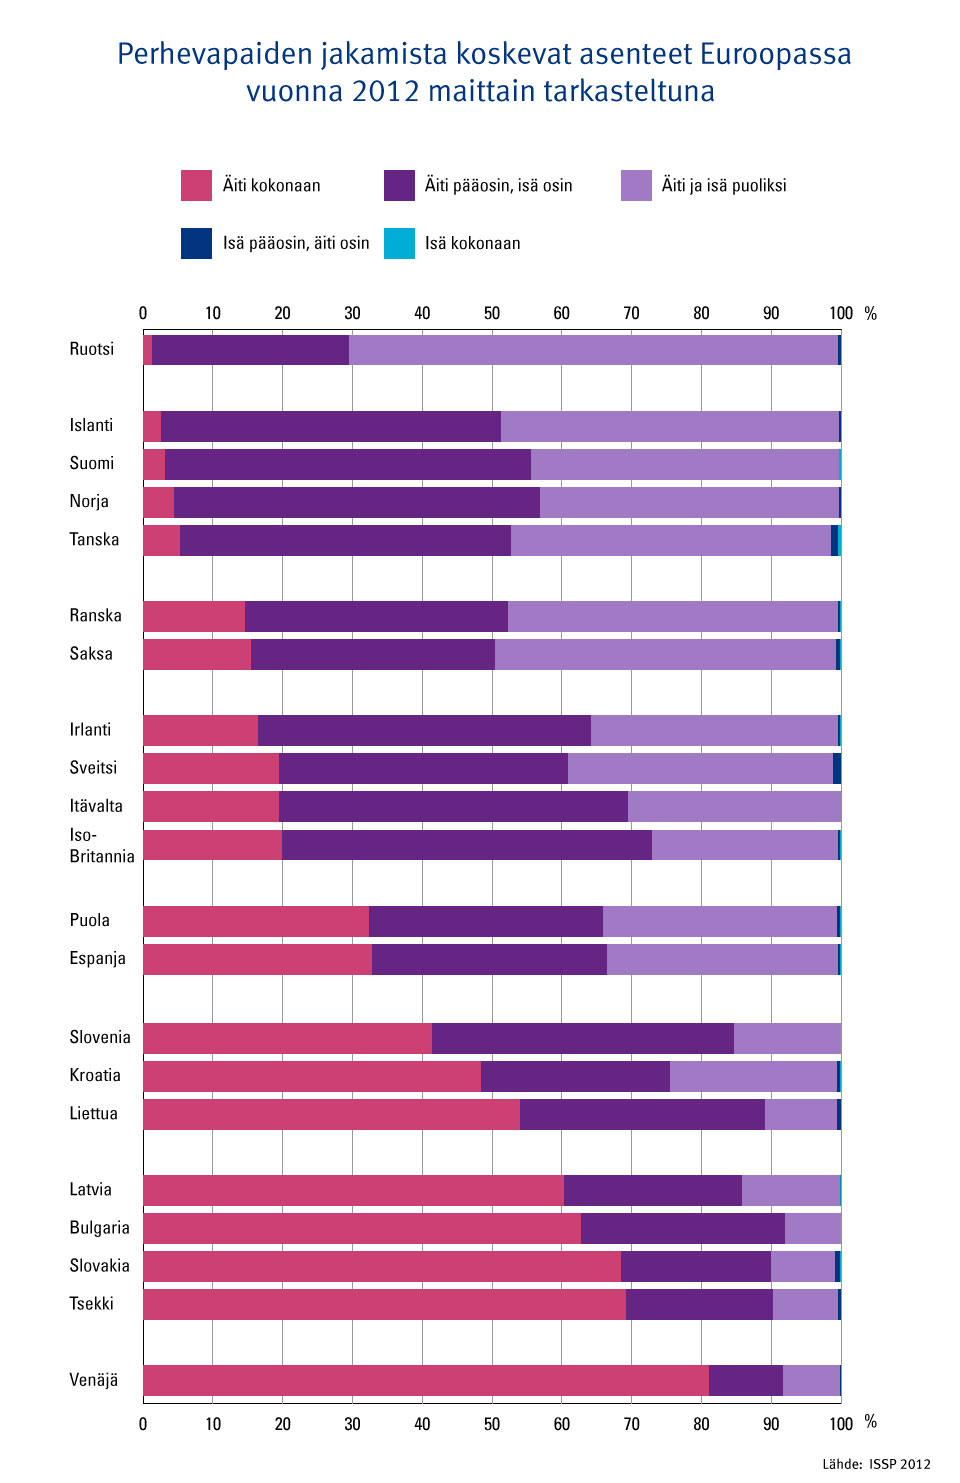 Kuvio 2. Perhevapaiden jakamista koskevat asenteet Euroopassa vuonna 2012 maittain tarkasteltuna.